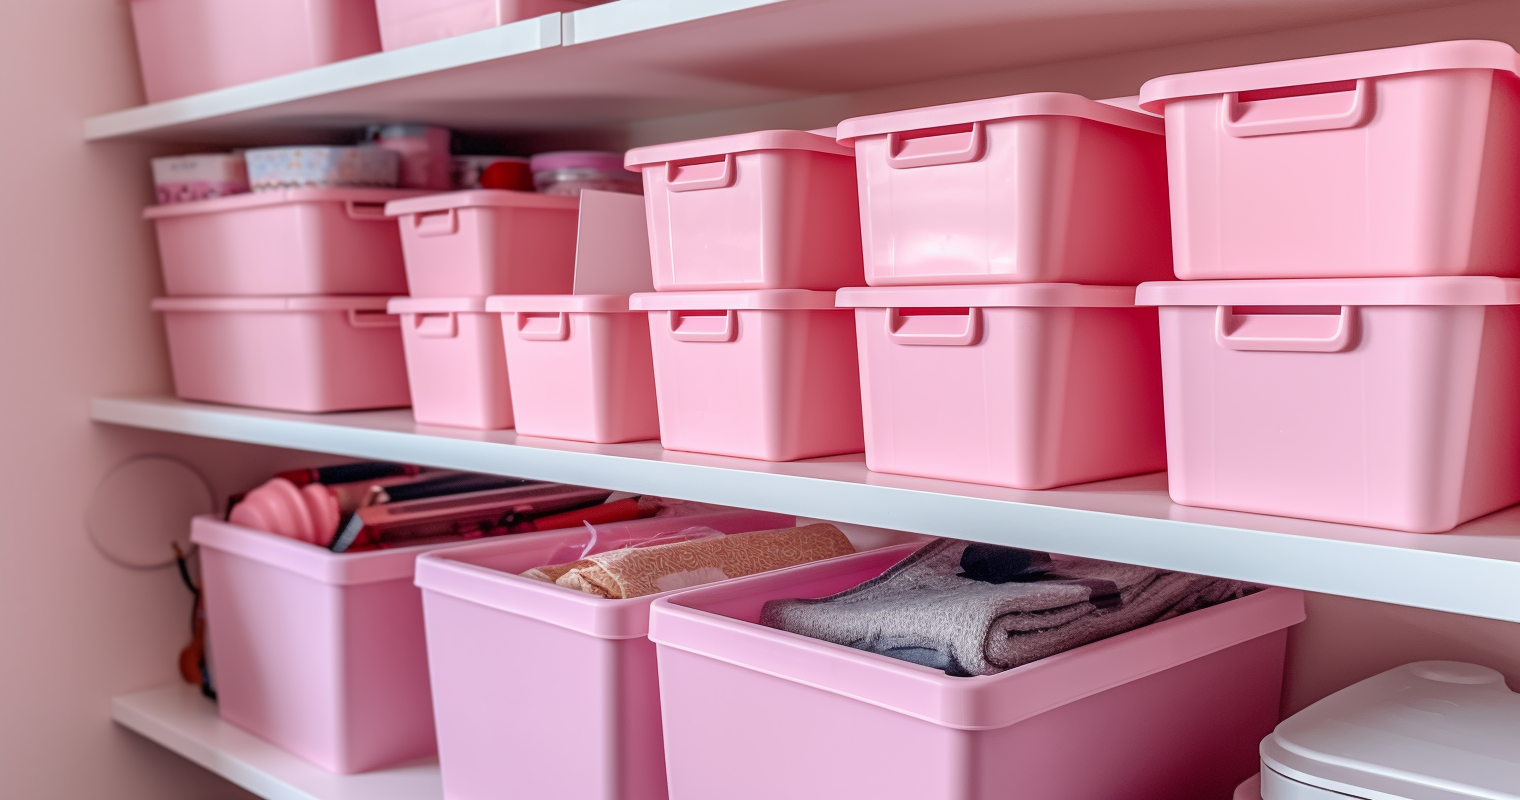 lots of pink storage bins